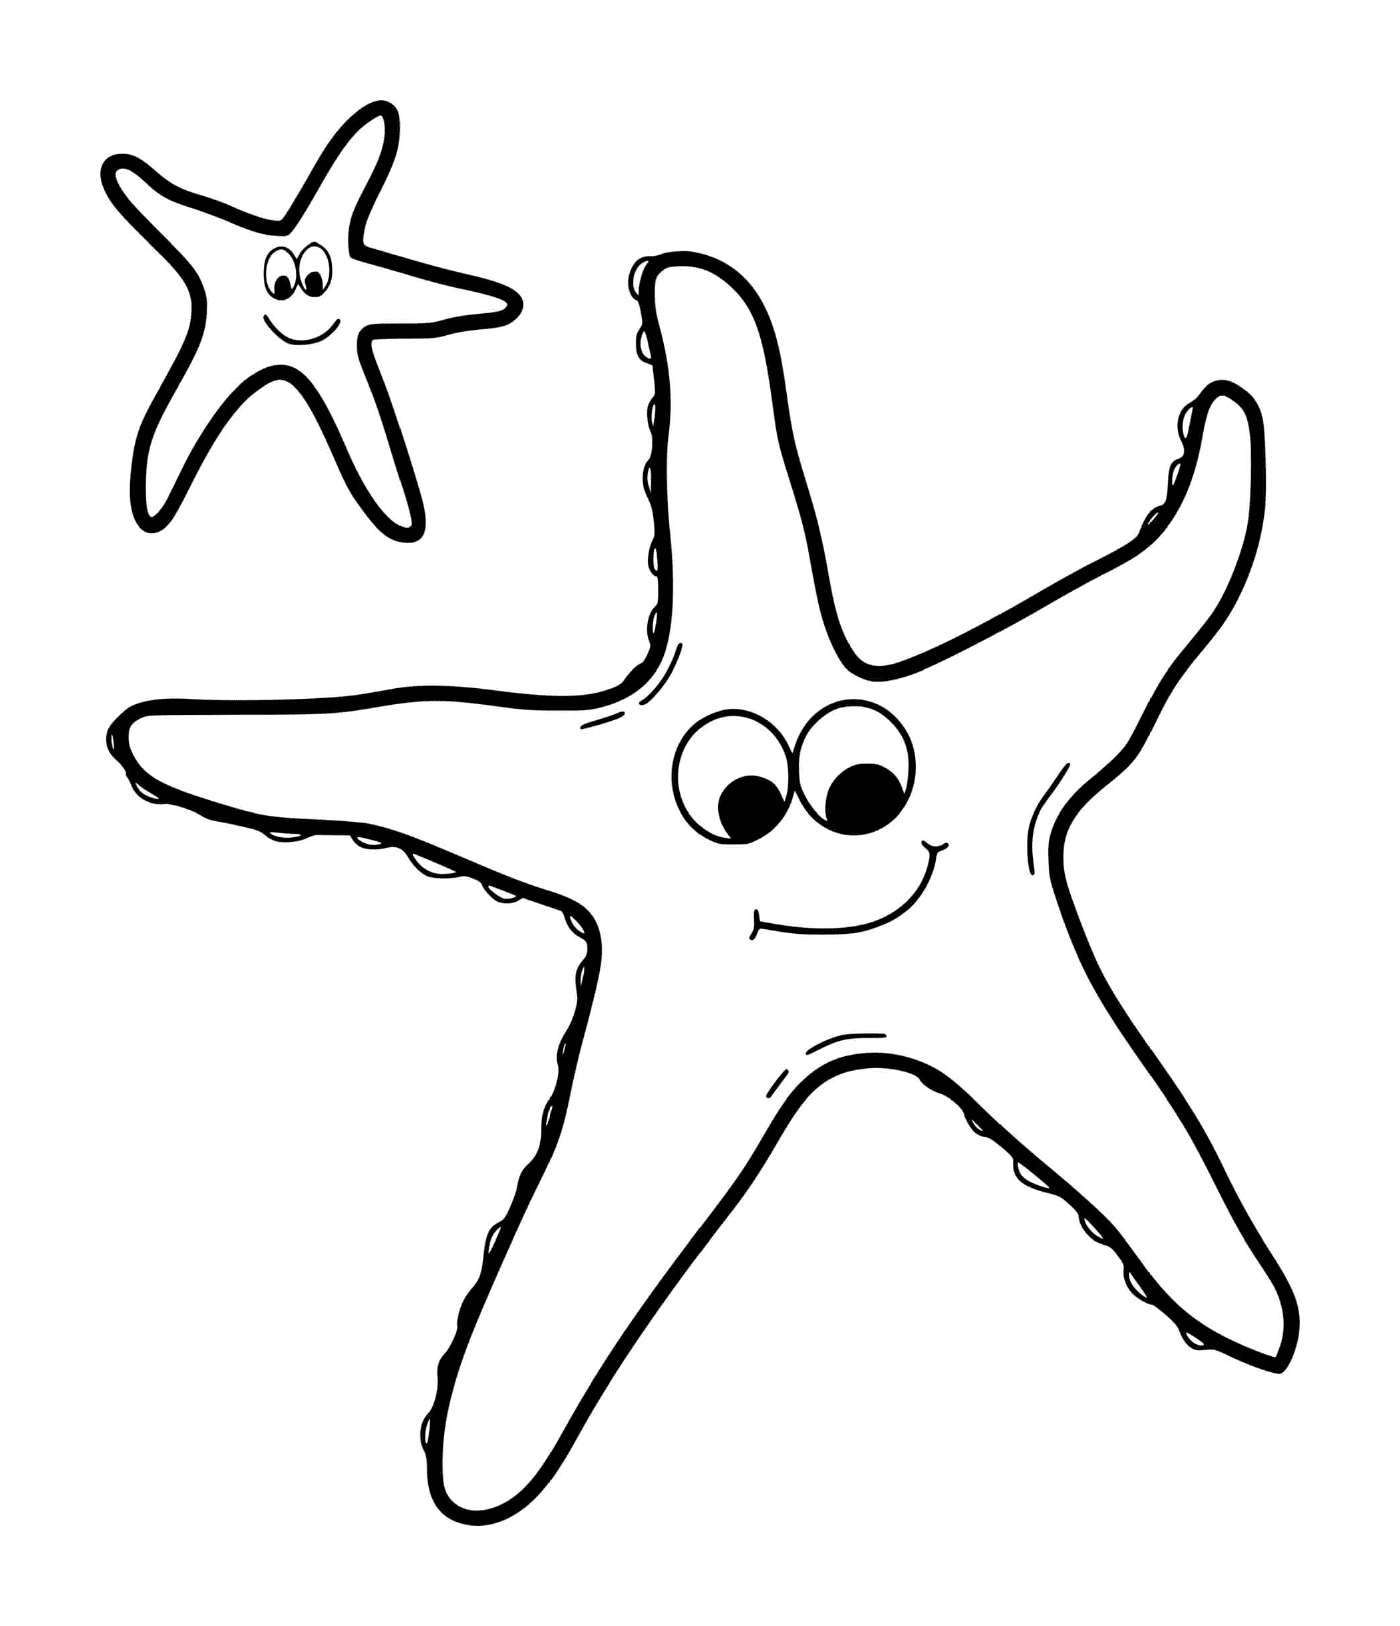   Deux étoiles de mer souriantes 